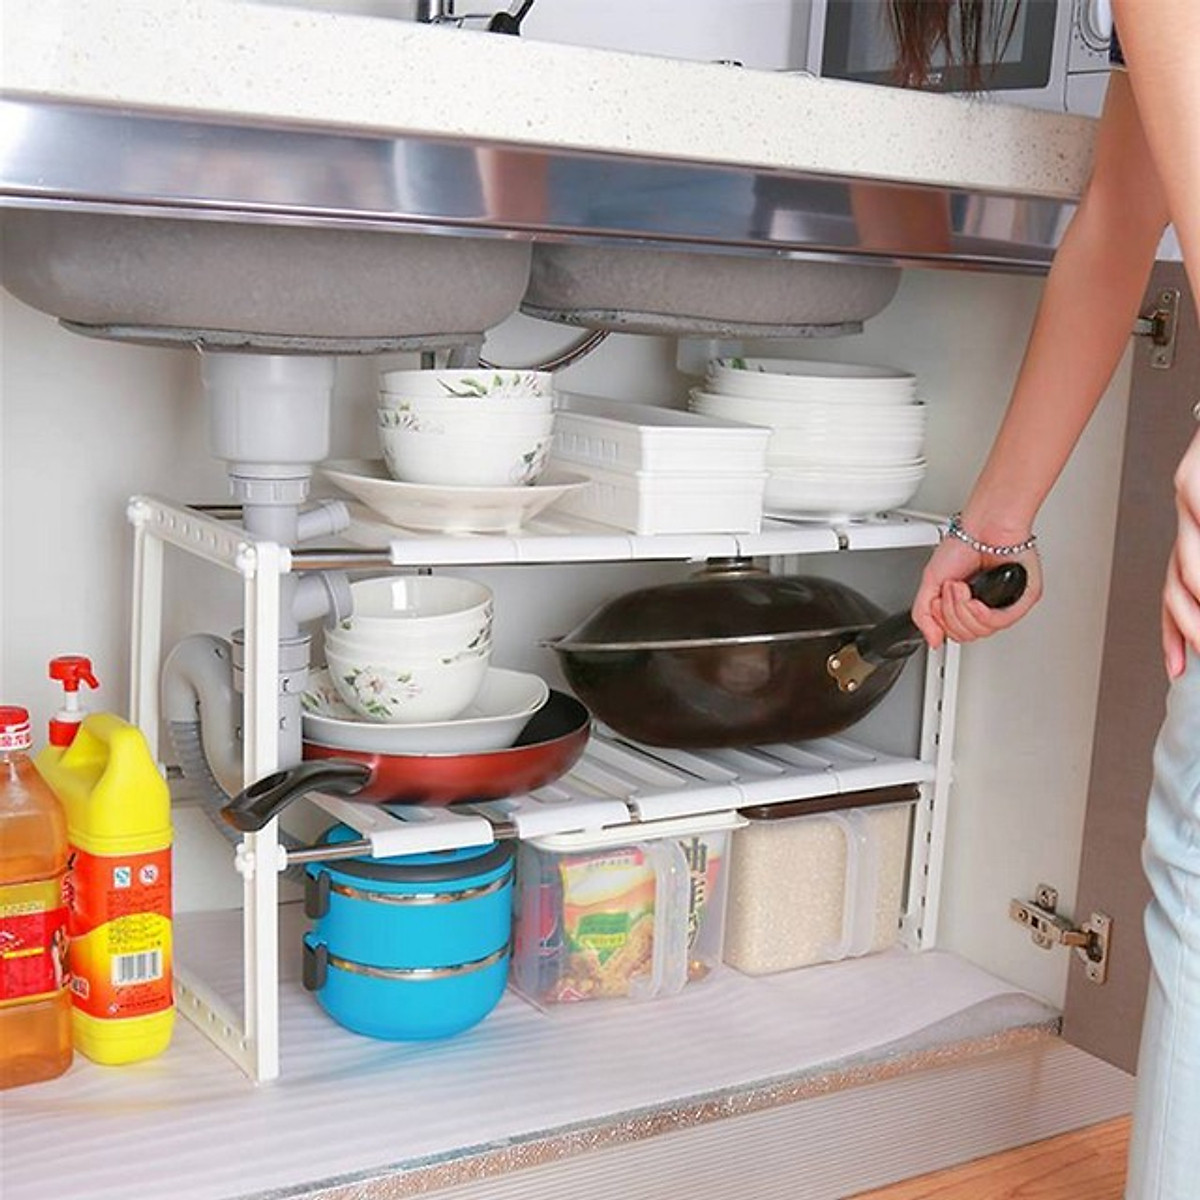 Nâng tầm lưu trữ cho căn bếp gia đình bằng những món phụ kiện nhỏ xinh với mức giá “rẻ không tưởng” - Ảnh 4.